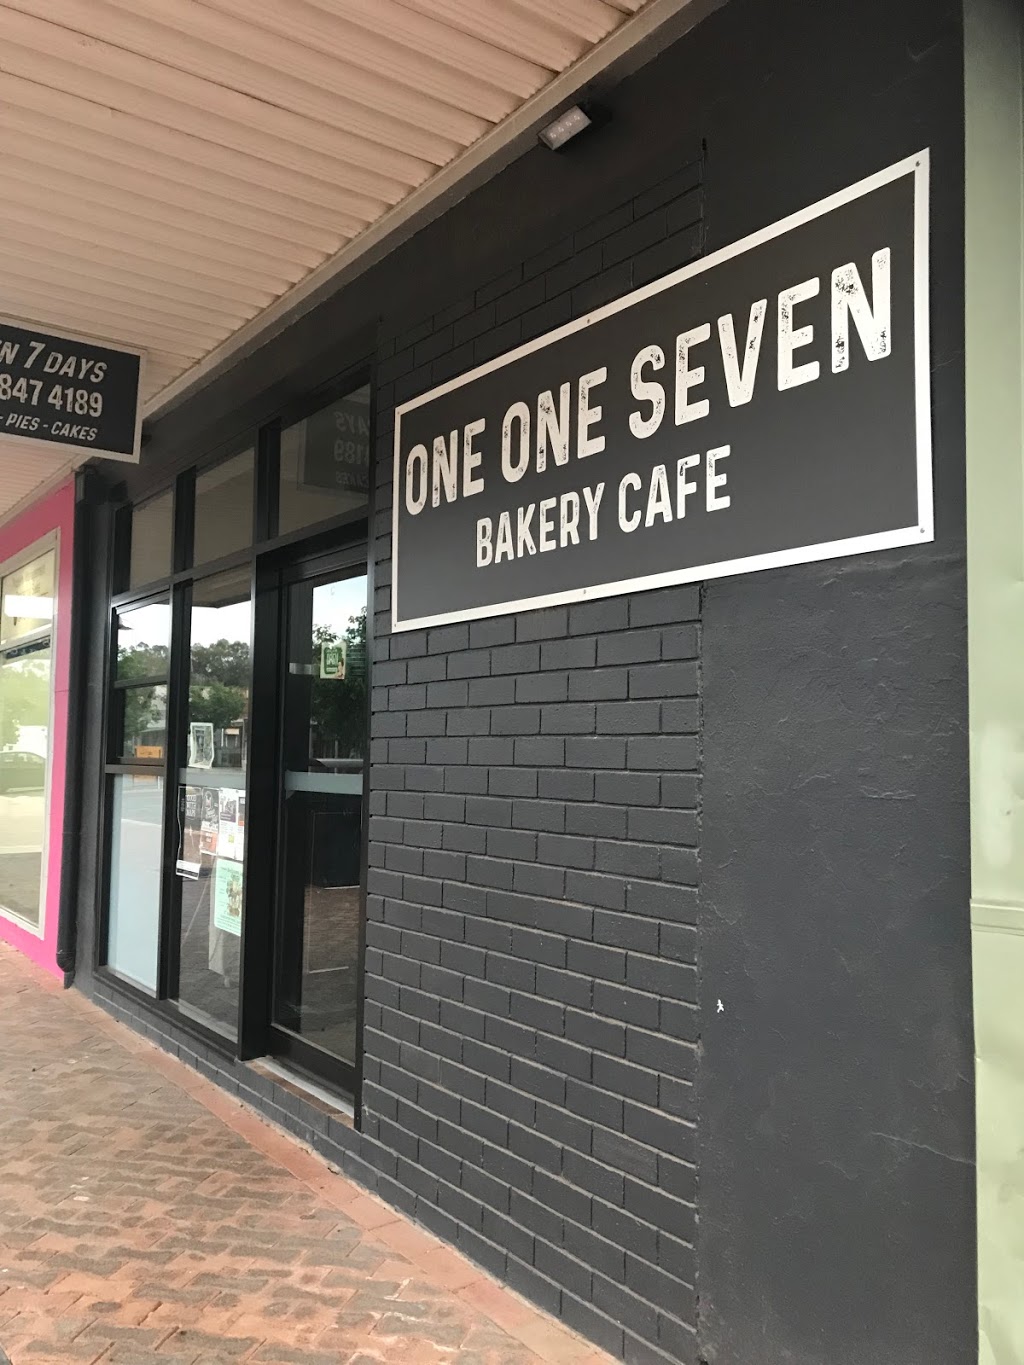 One One Seven Bakery Cafe | bakery | 117 Dubbo St, Warren NSW 2824, Australia | 0268474189 OR +61 2 6847 4189